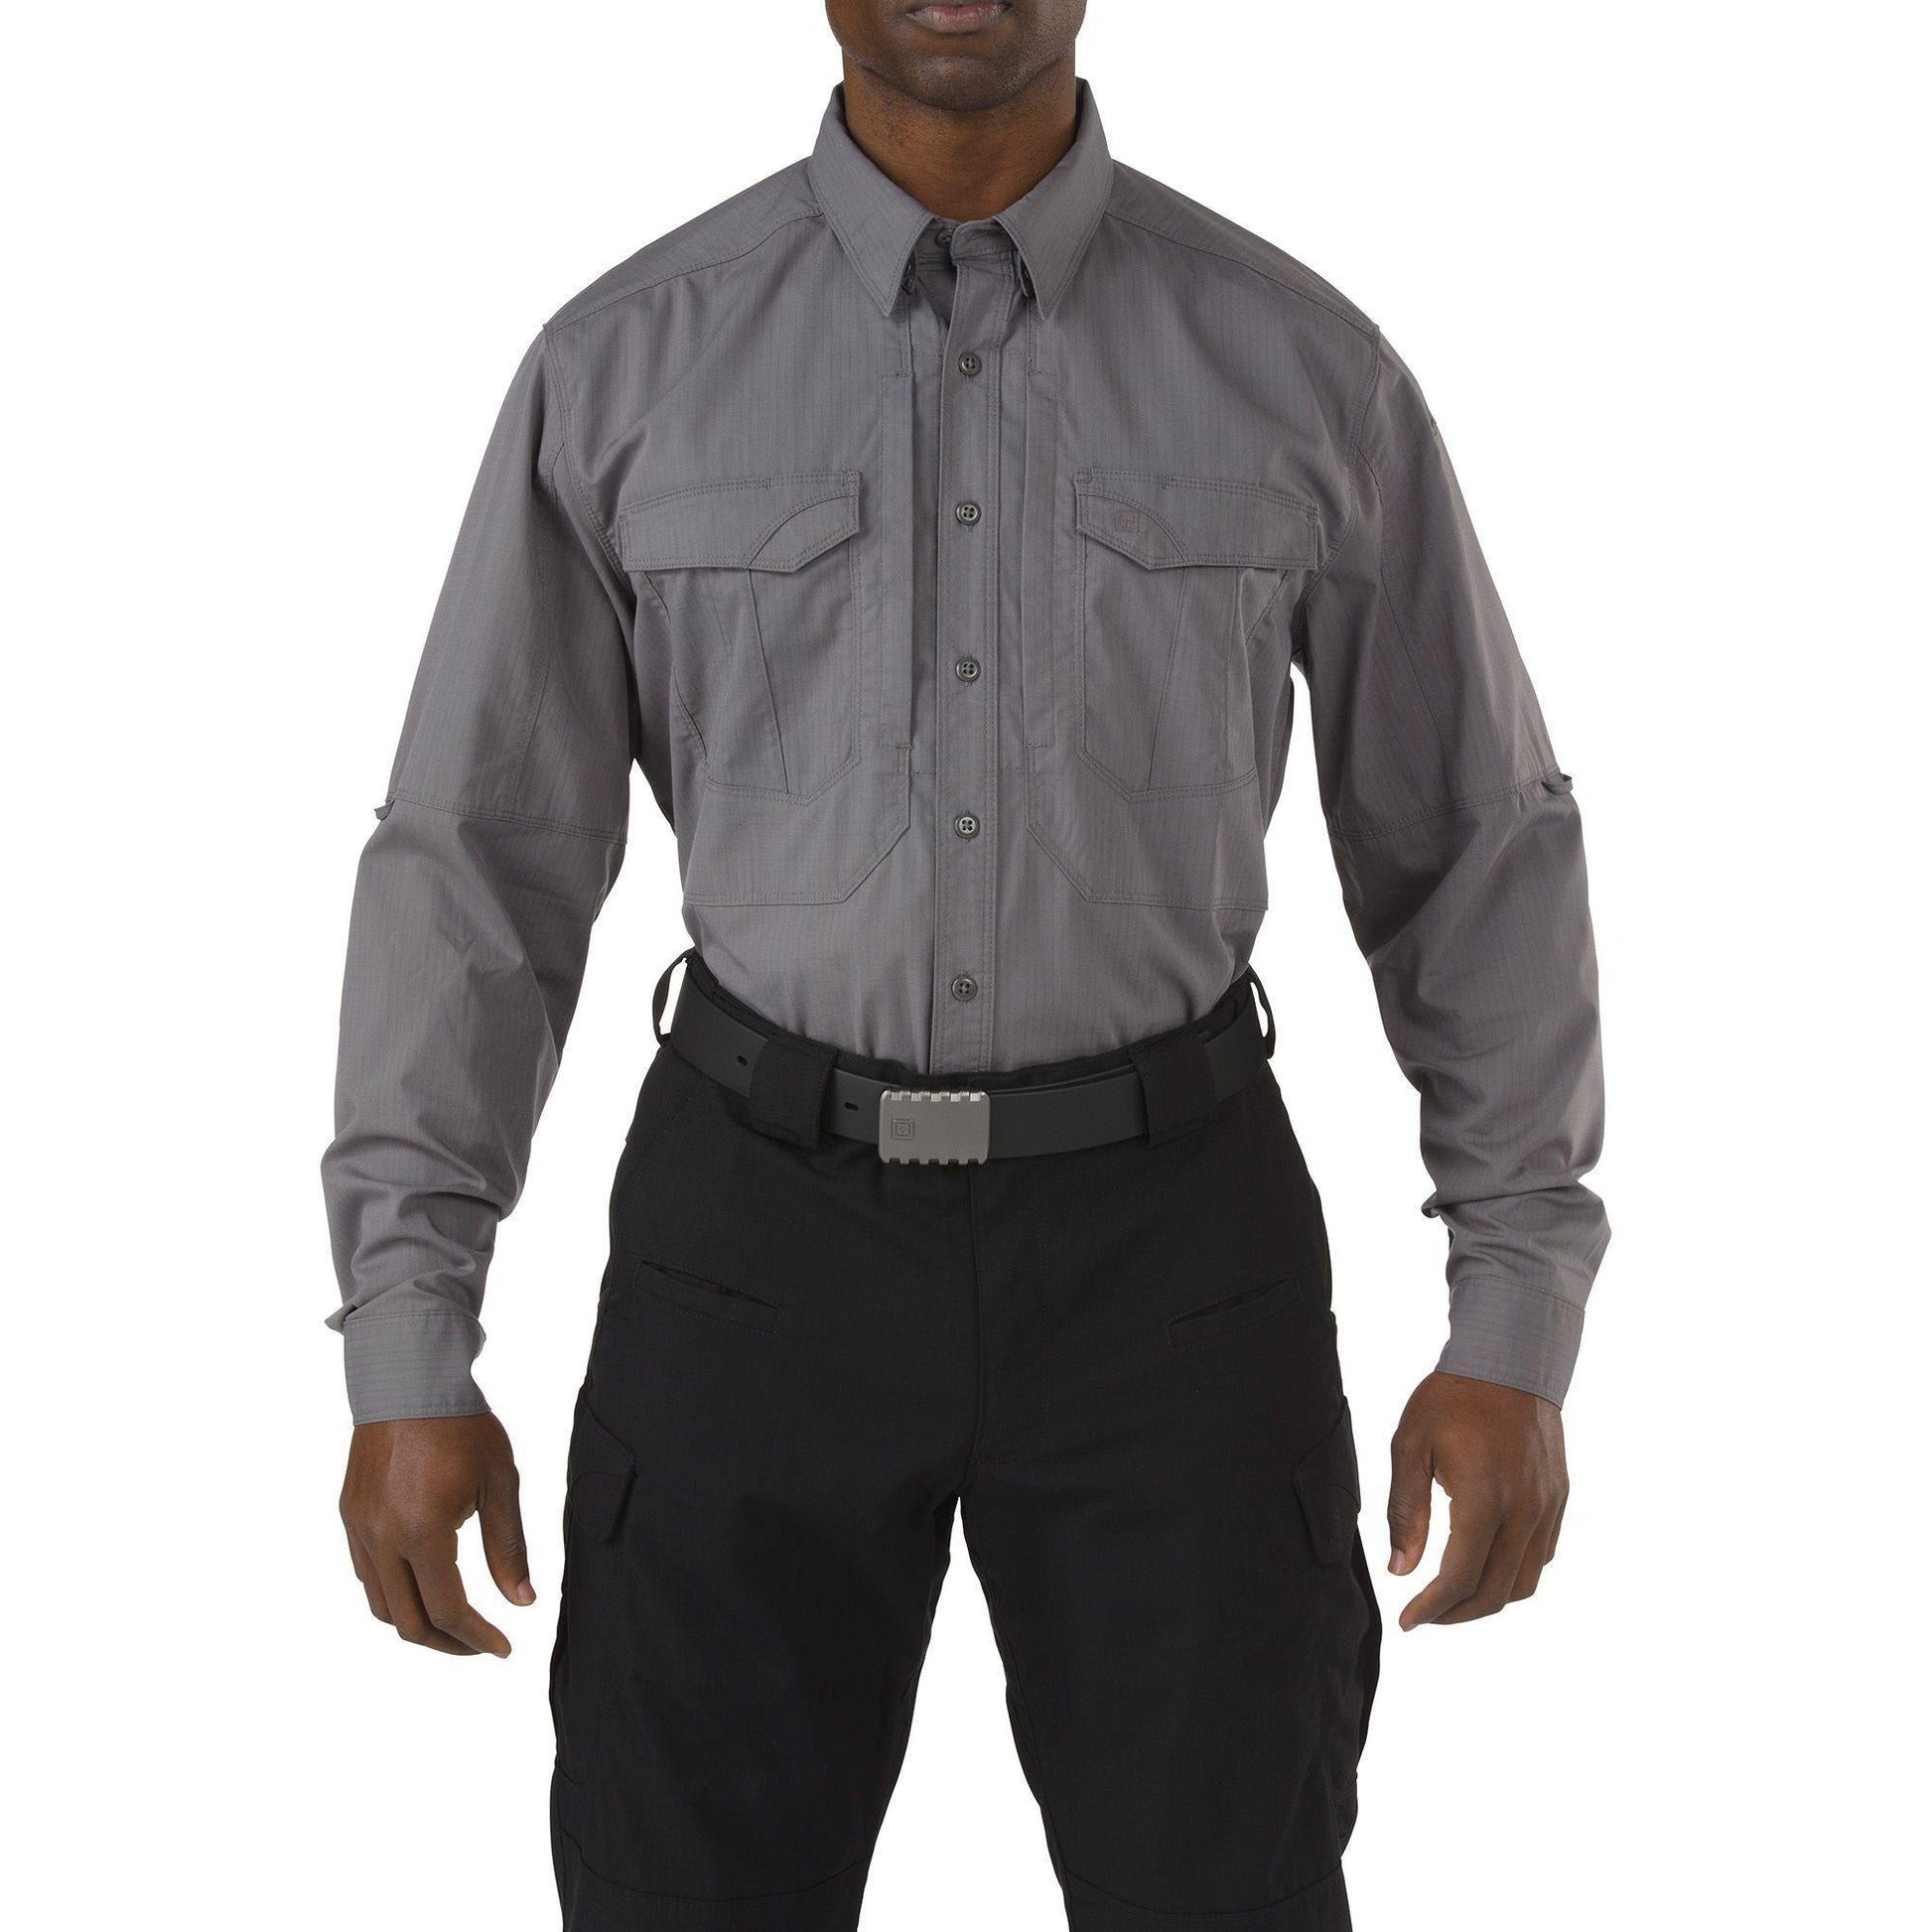 5.11 Stryke Long Sleeve Shirt (Jackor & Tröjor) från 5.11 Tactical. StormS - Regular | TacNGear - Utrustning för polis och militär och outdoor.